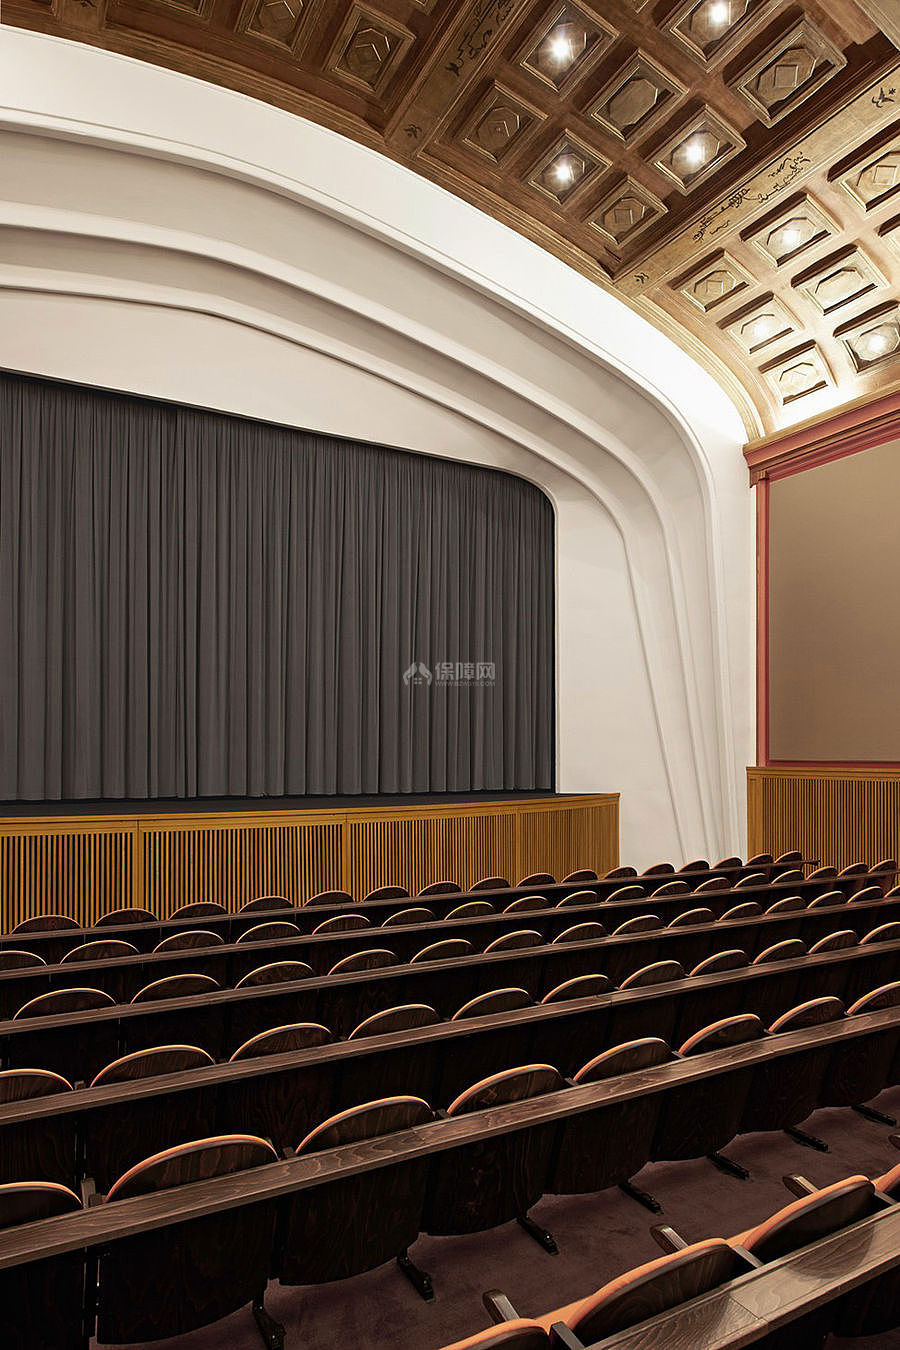 科特布斯影院之豪华放映厅座位布置效果图